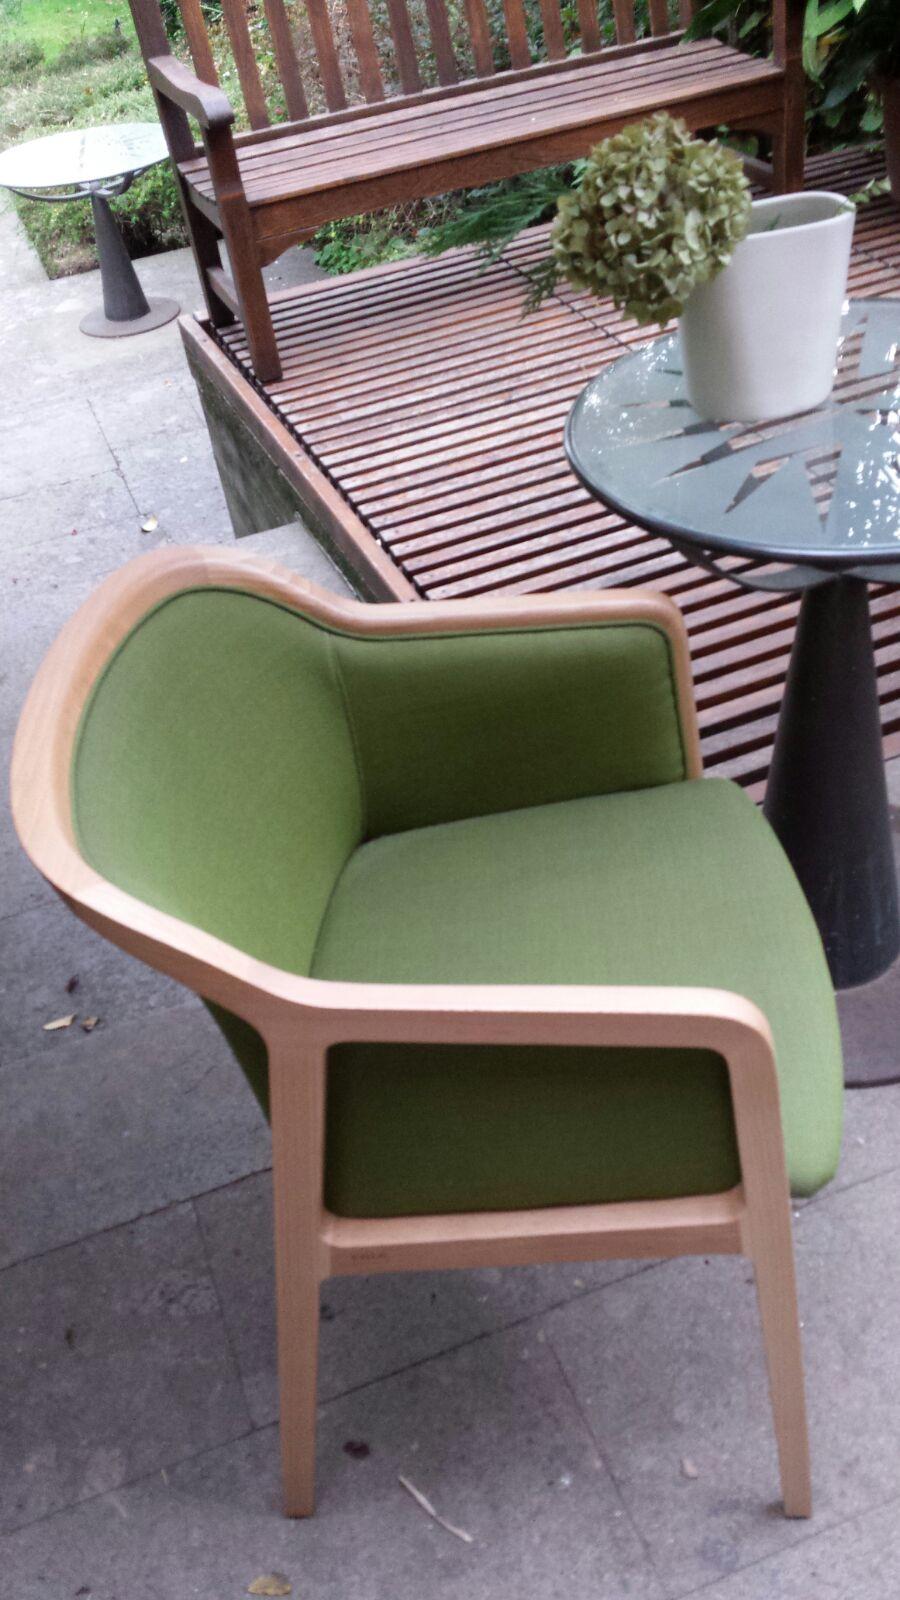 Vienna soft ist ein außergewöhnlich komfortabler und eleganter kleiner Sessel für den Essbereich, entworfen von Emmanuel Gallina, der gerne Brancusi zitiert, wenn er sagt, dass 